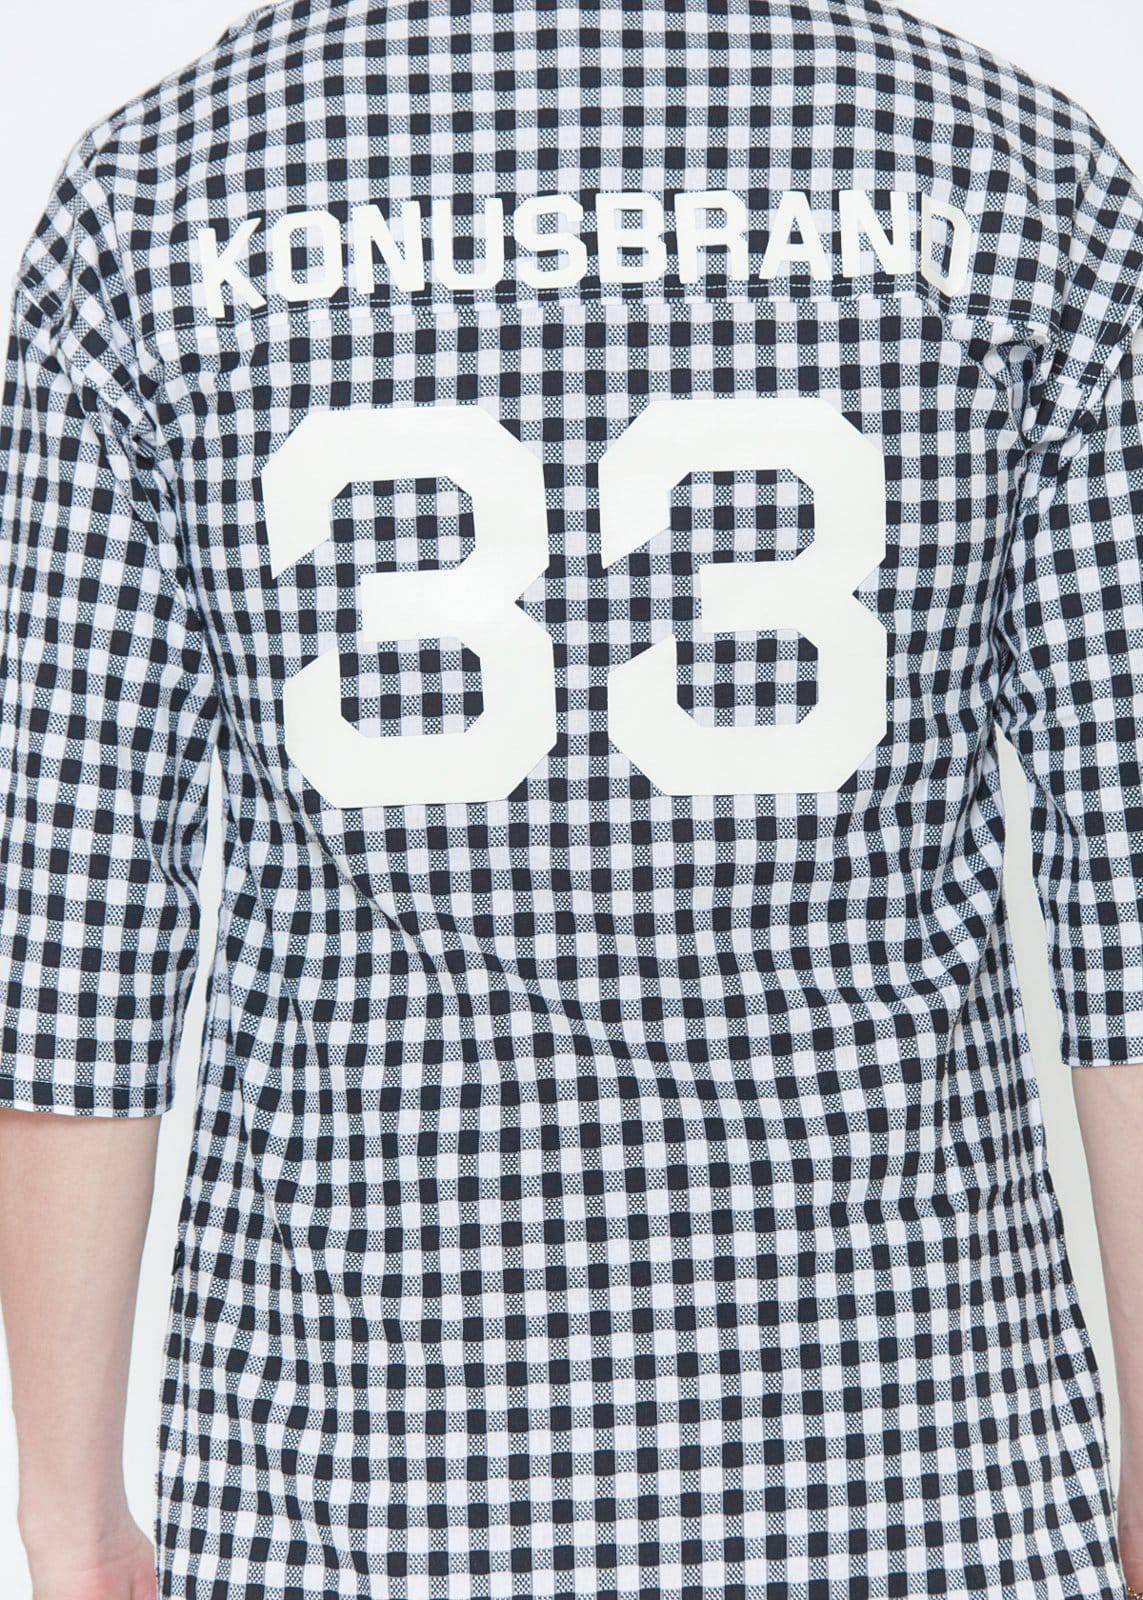 Konus Men's Short Sleeve 33 Semi Shirt by Shop at Konus